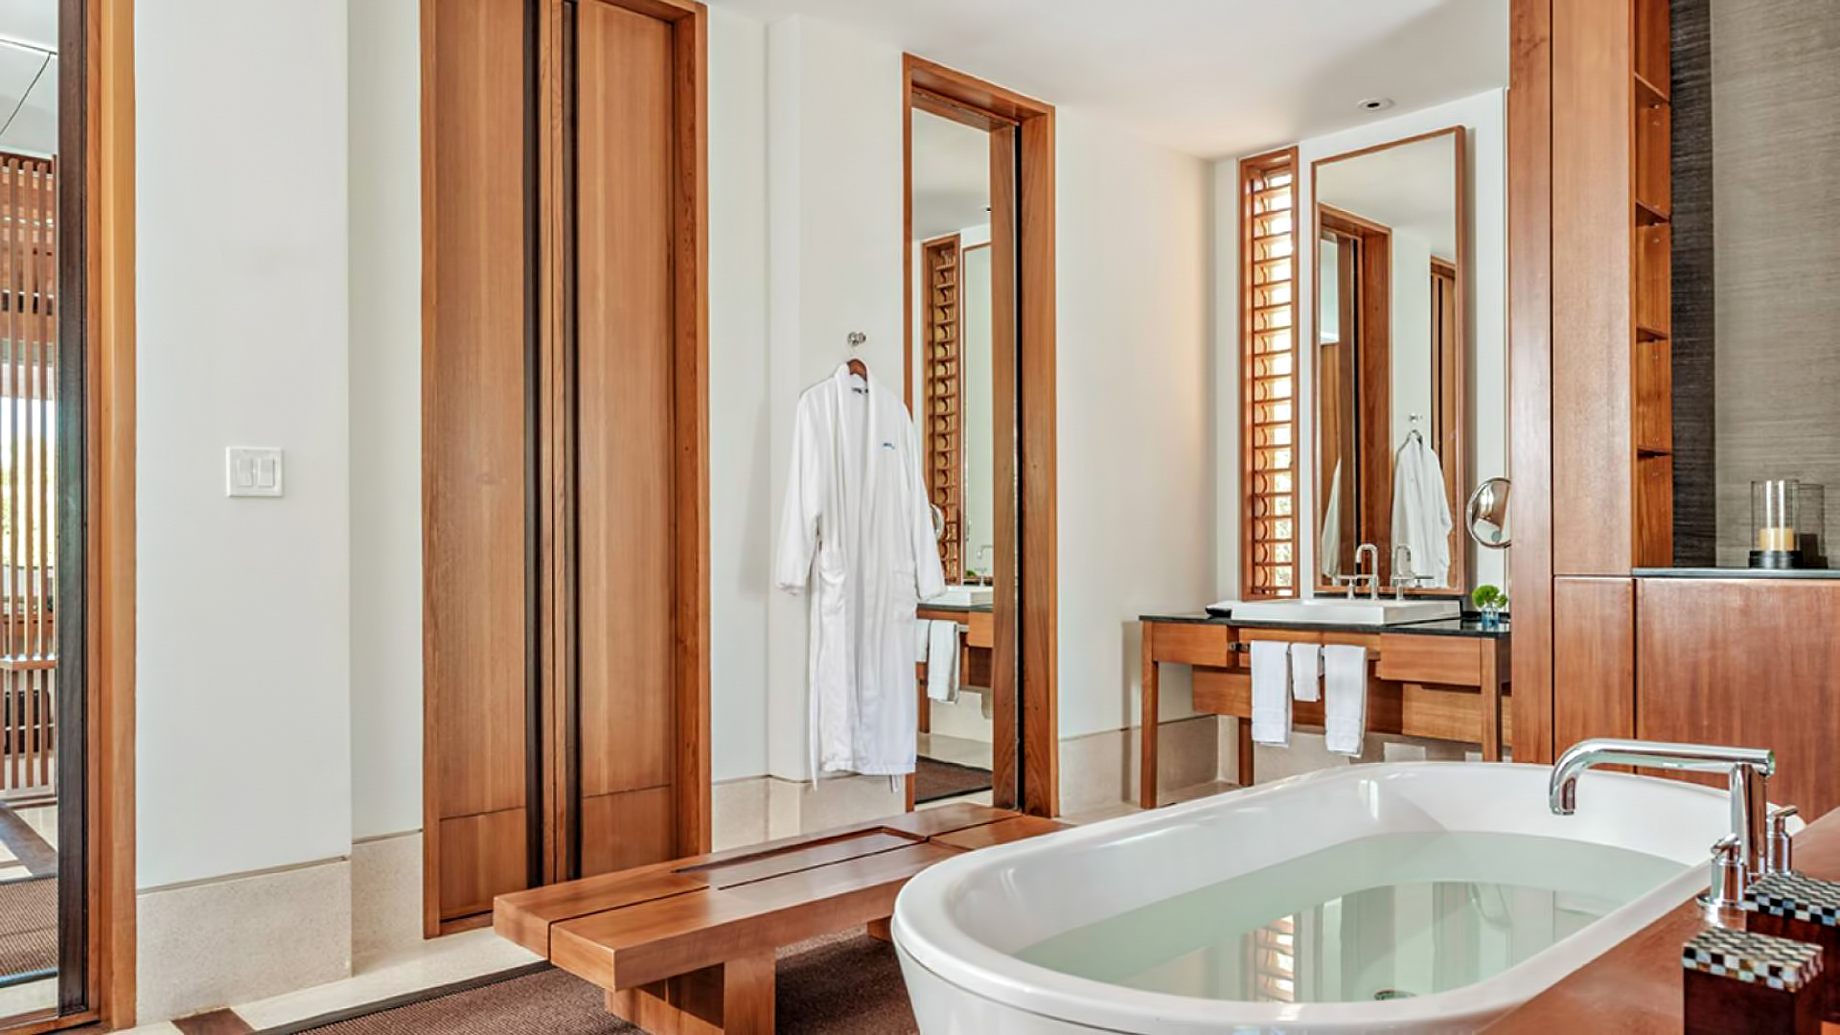 Amanyara Resort – Providenciales, Turks and Caicos Islands – 3 Bedroom Tranquility Villa Bathroom